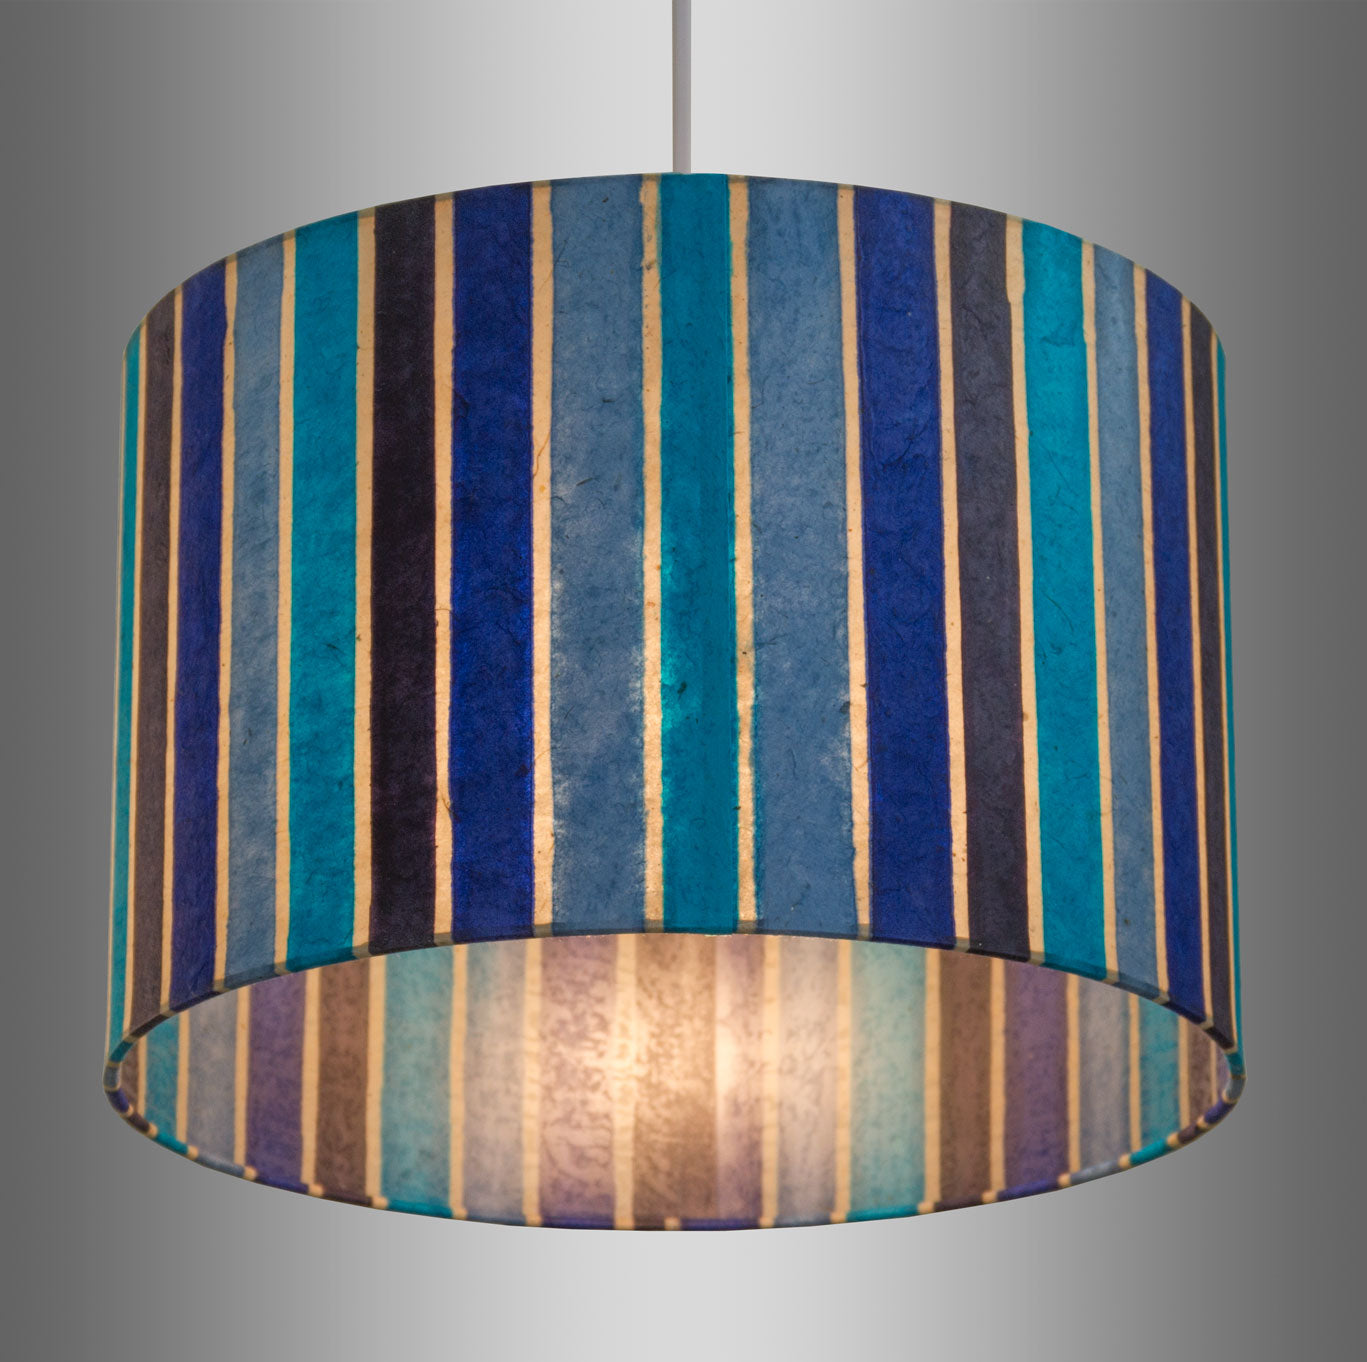 Wall Light - P05 - Batik Stripes Blue, 36cm(wide) x 20cm(h)